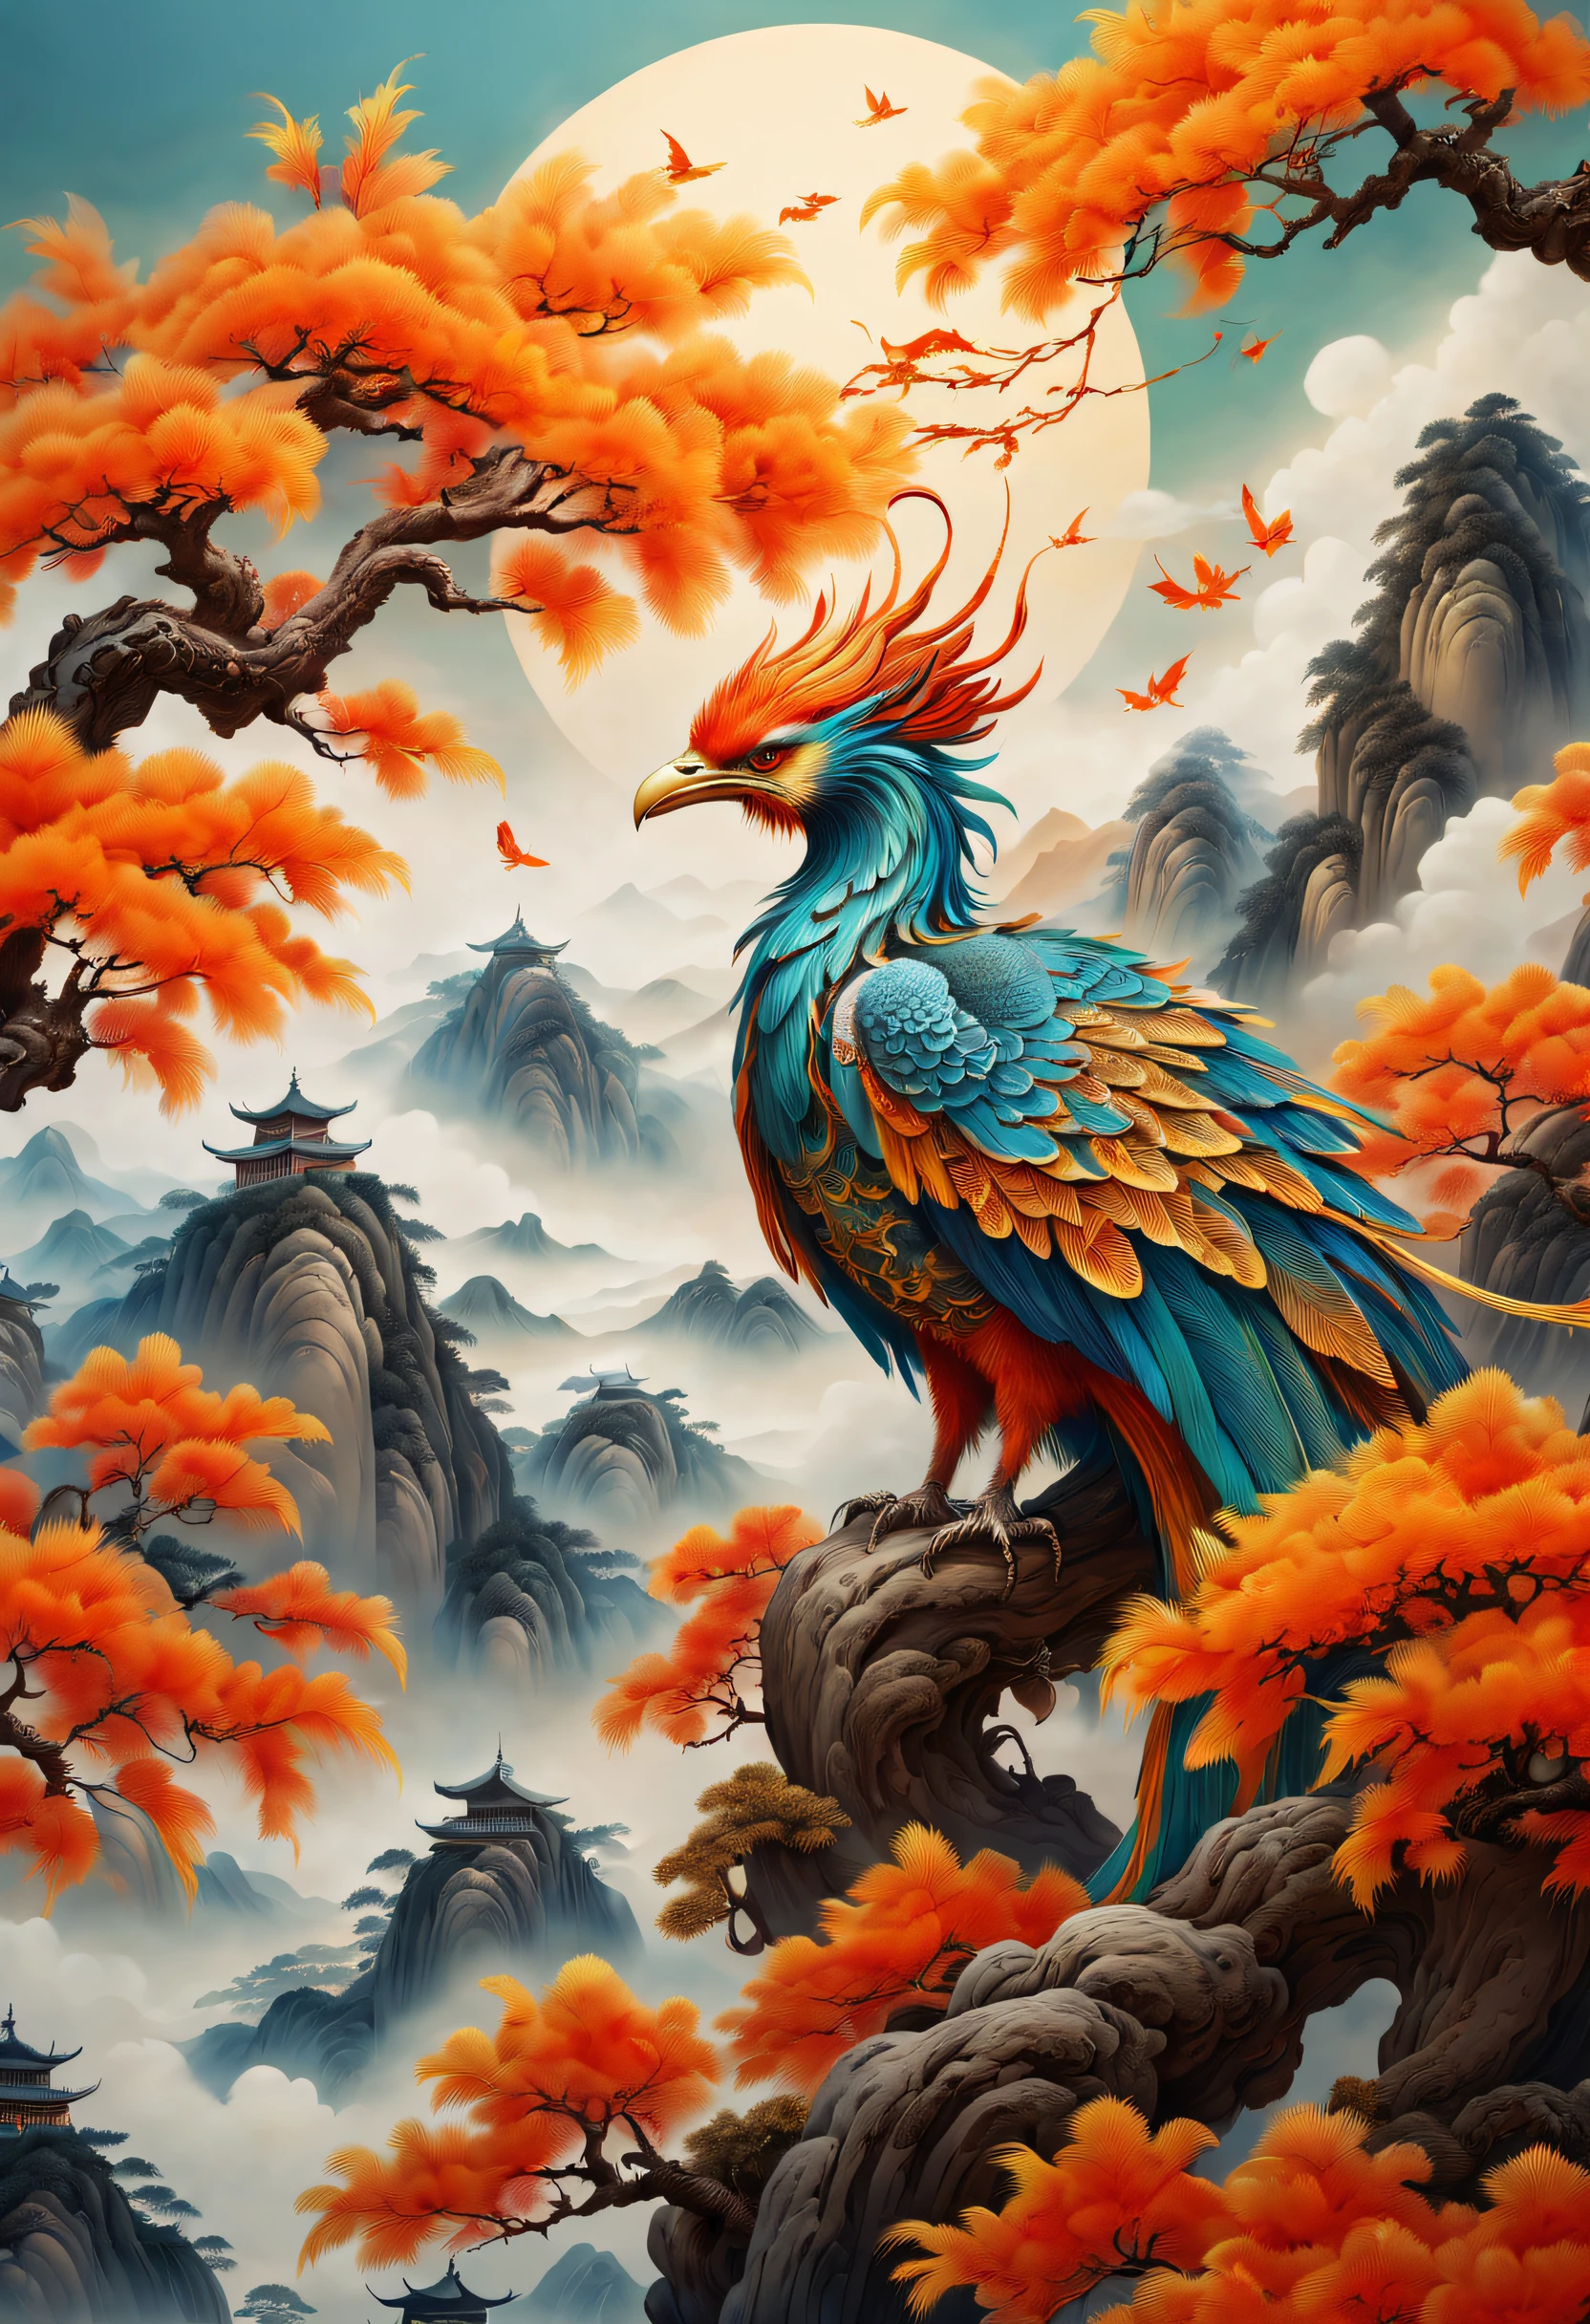 古代中国の絵画，プラタナスの木に輝くフェニックスがあります，空想的な，4K高品質でリアル，山脈， リオス，縁起の良い雲，羽は着色されています，眩しい，ロングテールはカラフルな色を帯びています， スーパーディテール， 壮大な構成， ハイパーHD， 高品質， 非常に詳細な， 公式アート， ユニティ8k壁紙， スーパーディテール， 32K